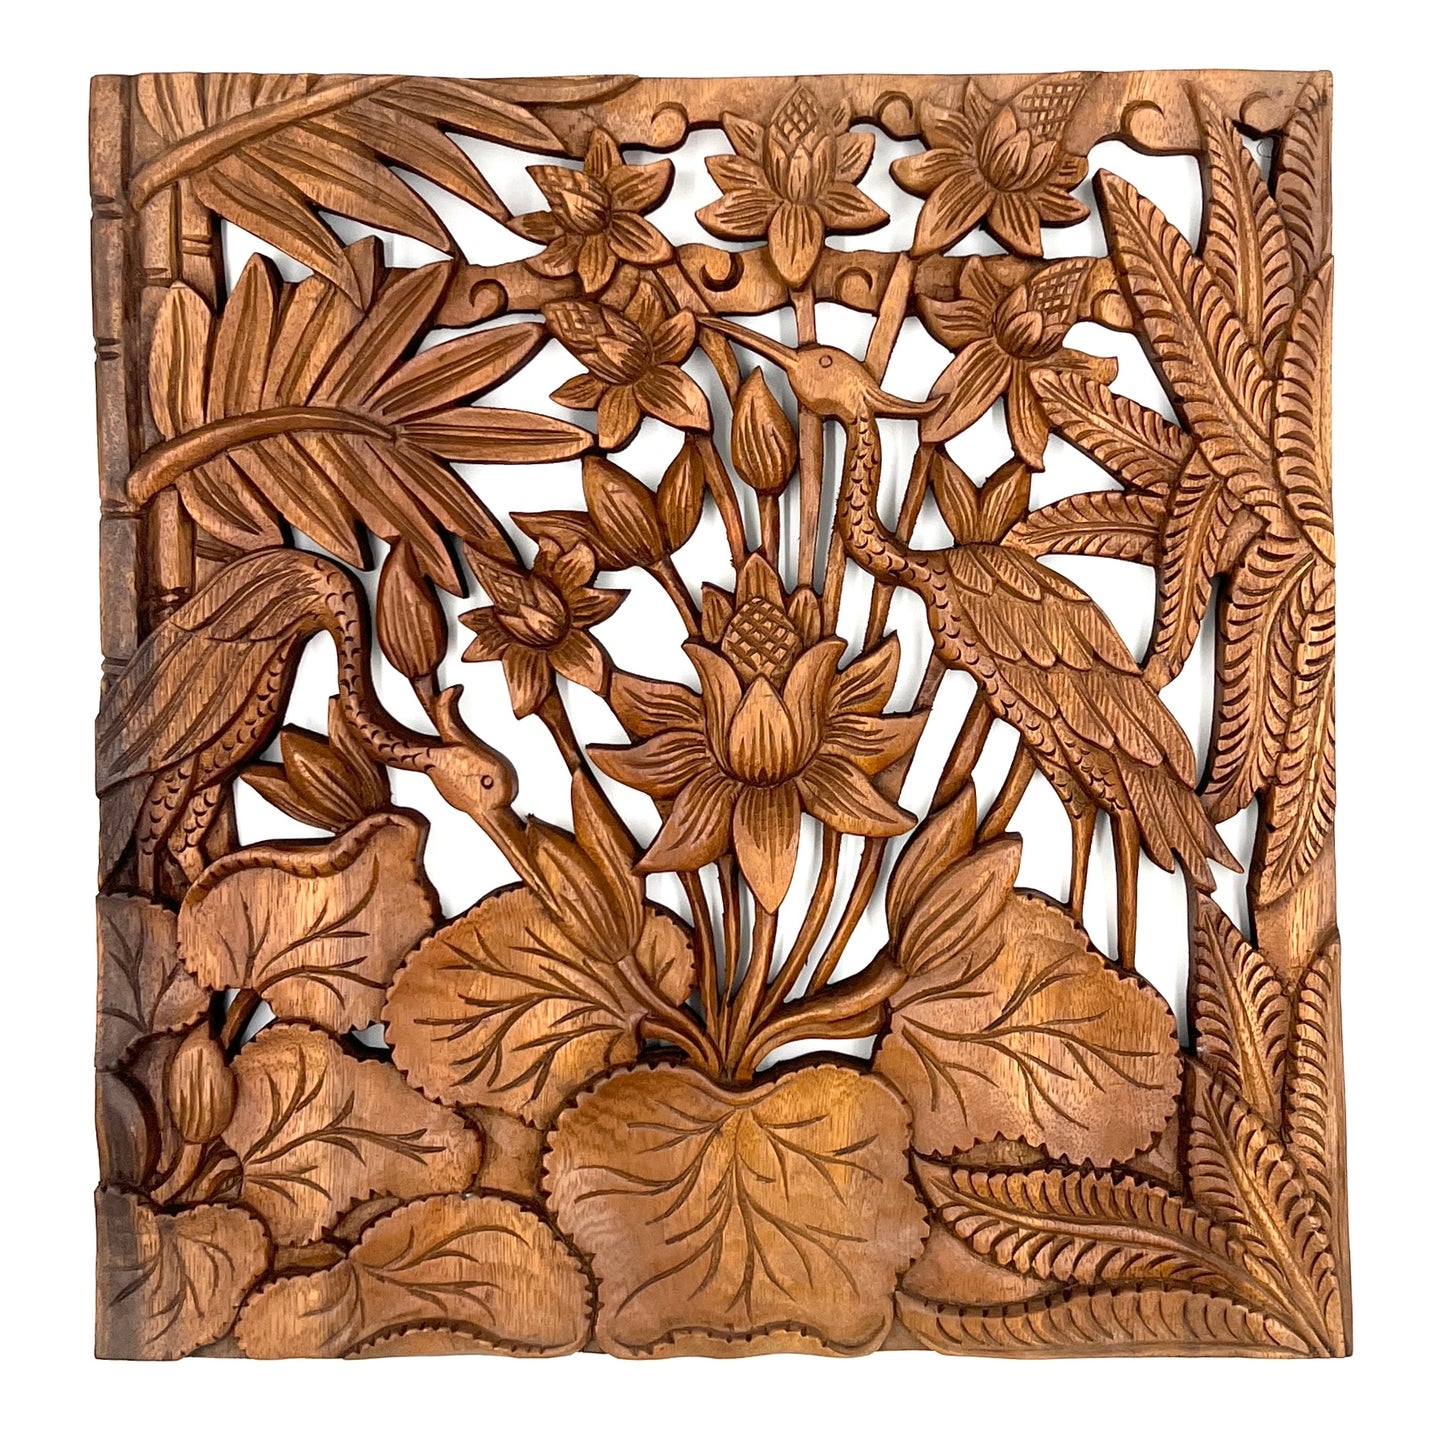 Lotus Flower & Heron Panel Carving